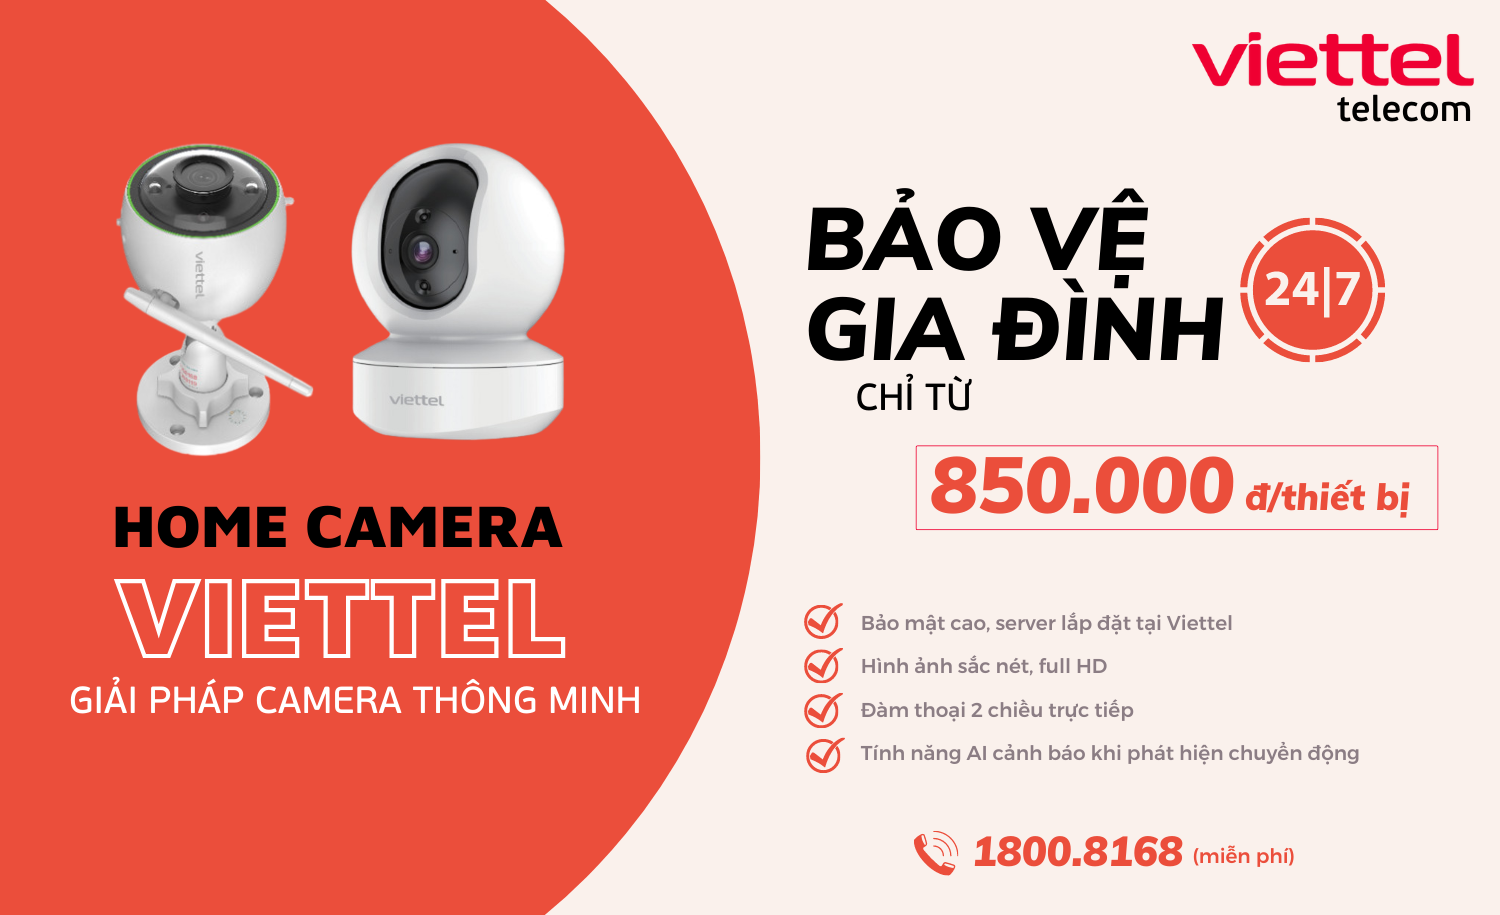 Viettel Telecom: Viettel Telecom - một trong những công ty viễn thông lớn nhất tại Việt Nam. Hãy xem ảnh để khám phá những hoạt động và sản phẩm mới nhất của Viettel, giúp bạn kết nối mạng và trải nghiệm cuộc sống một cách tốt nhất.